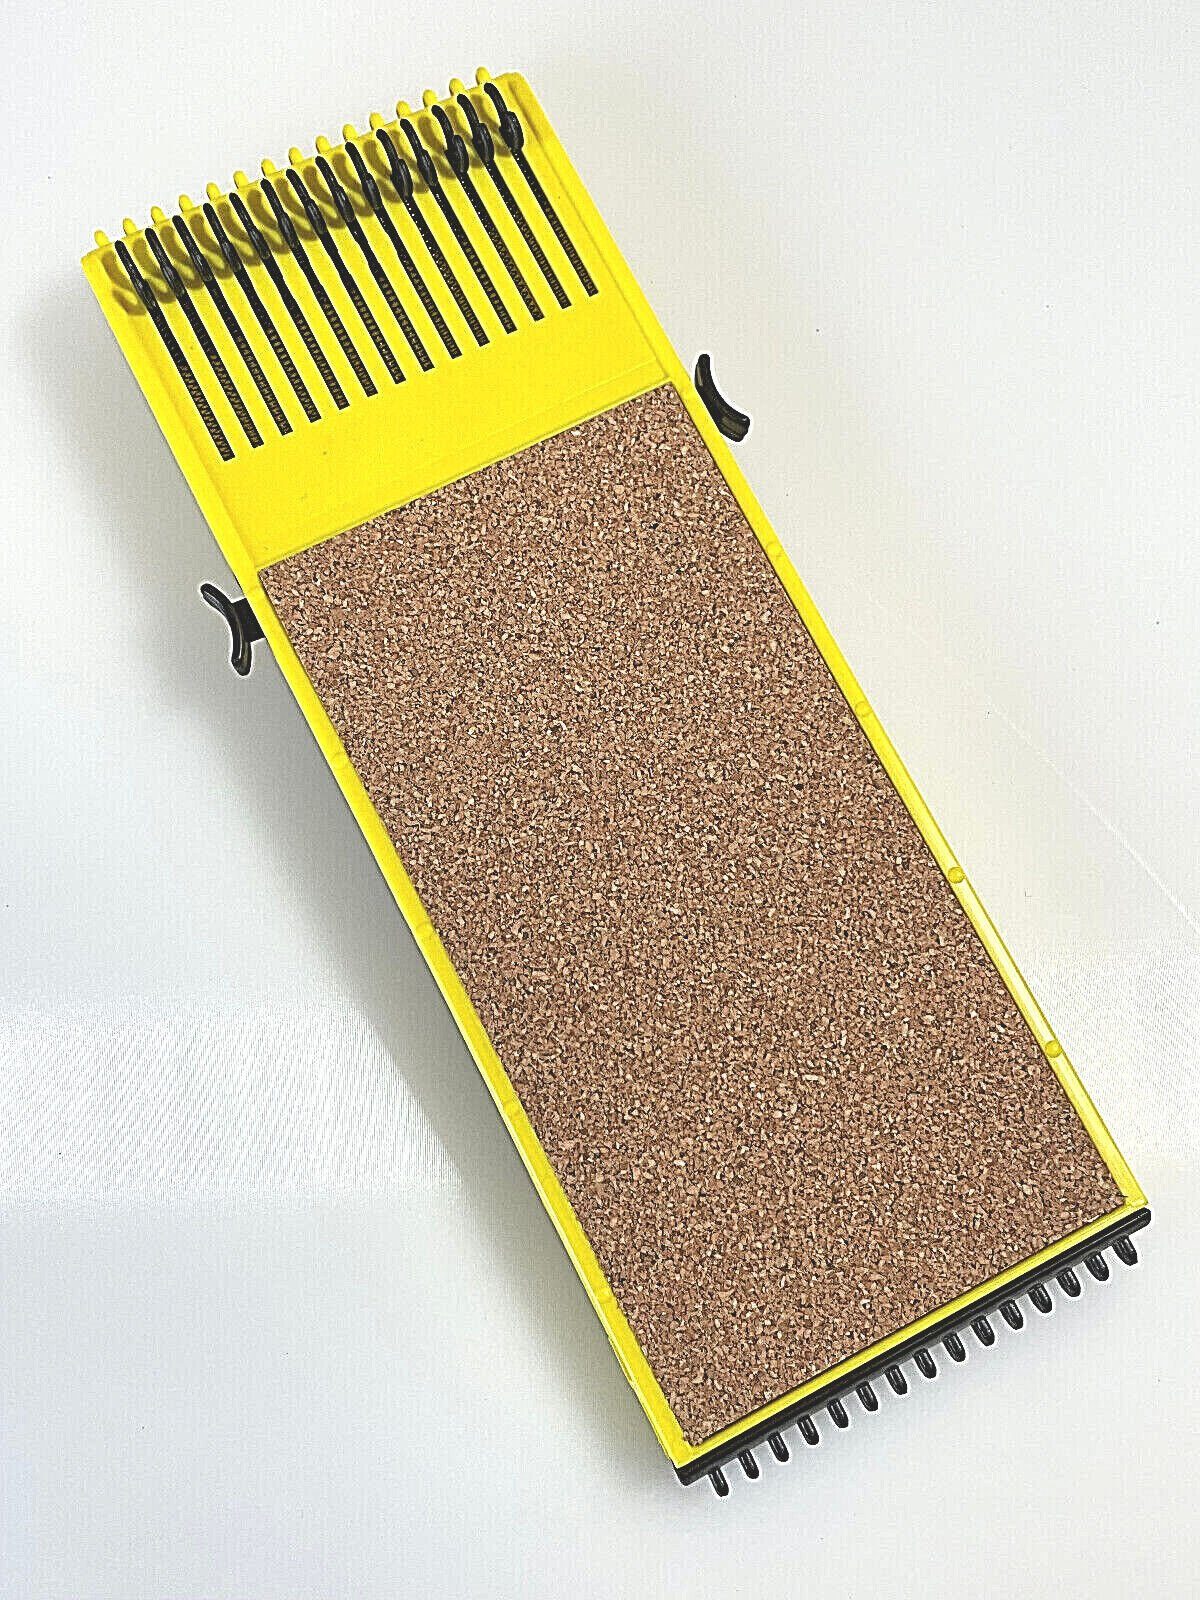 Kork Angelschnurwickler RIG-HOLDER Spanner Gelb-schwarz Vorfach Aufwickler DeLuxe Anplast Verstellbarer